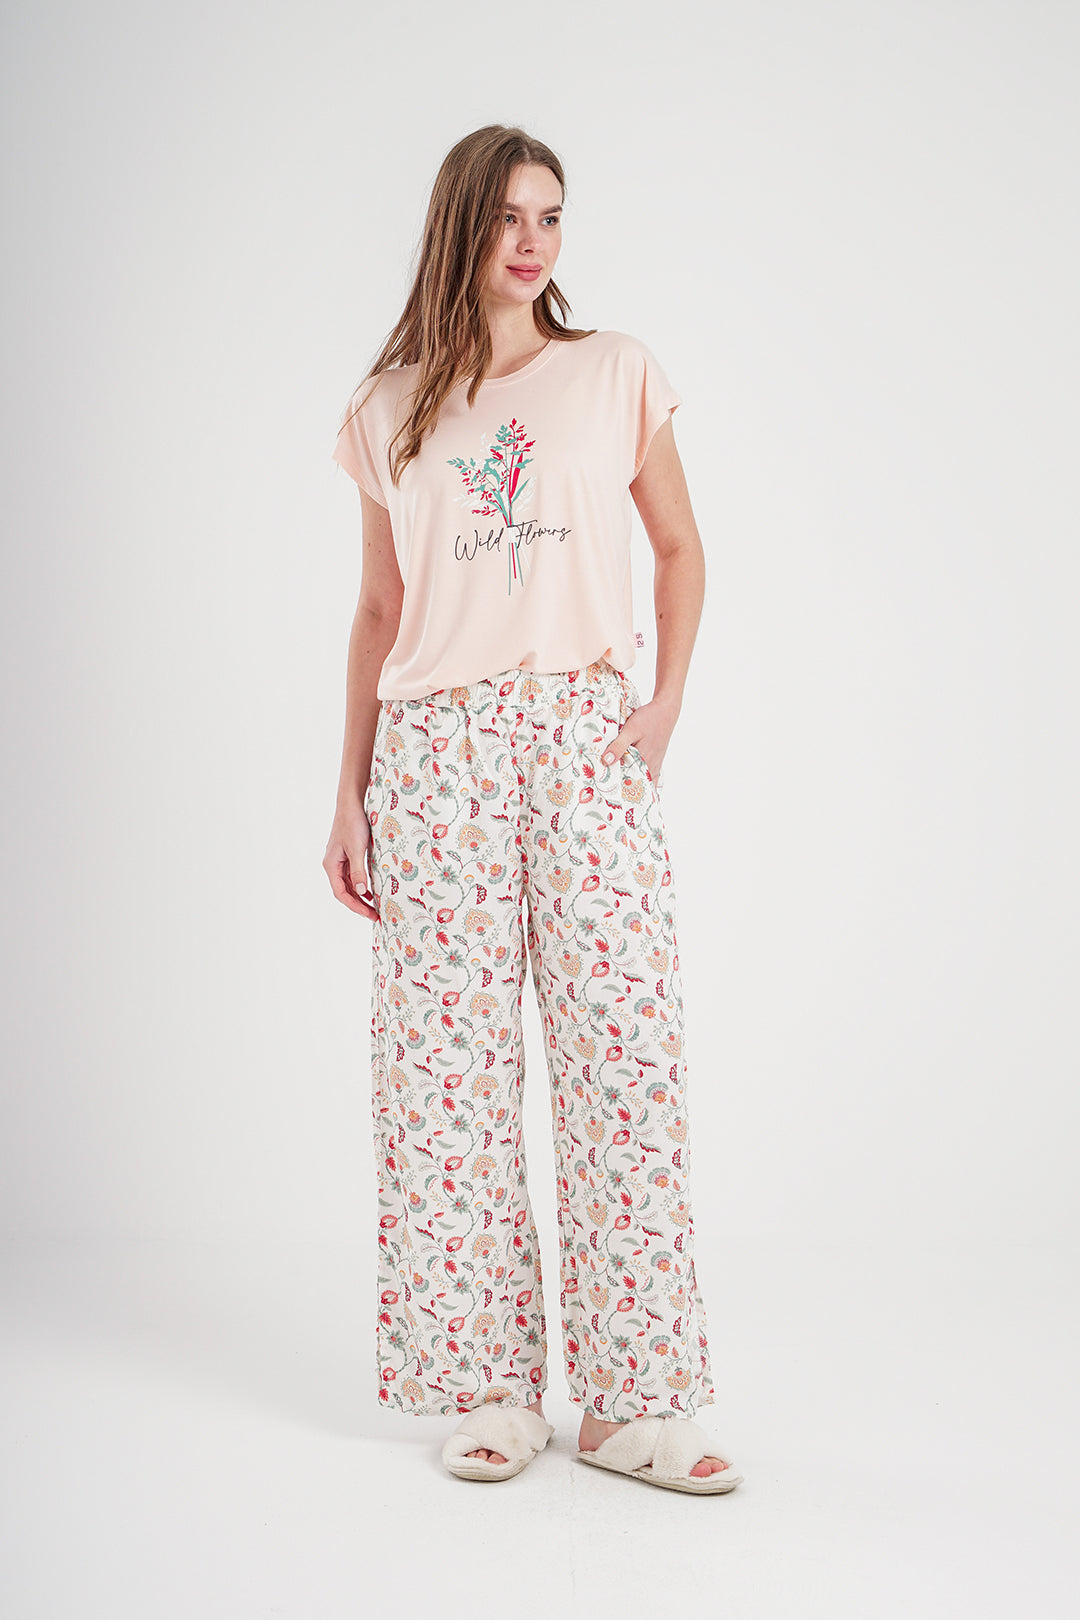 Wild Flowers women's pajamas with printed viscose pants